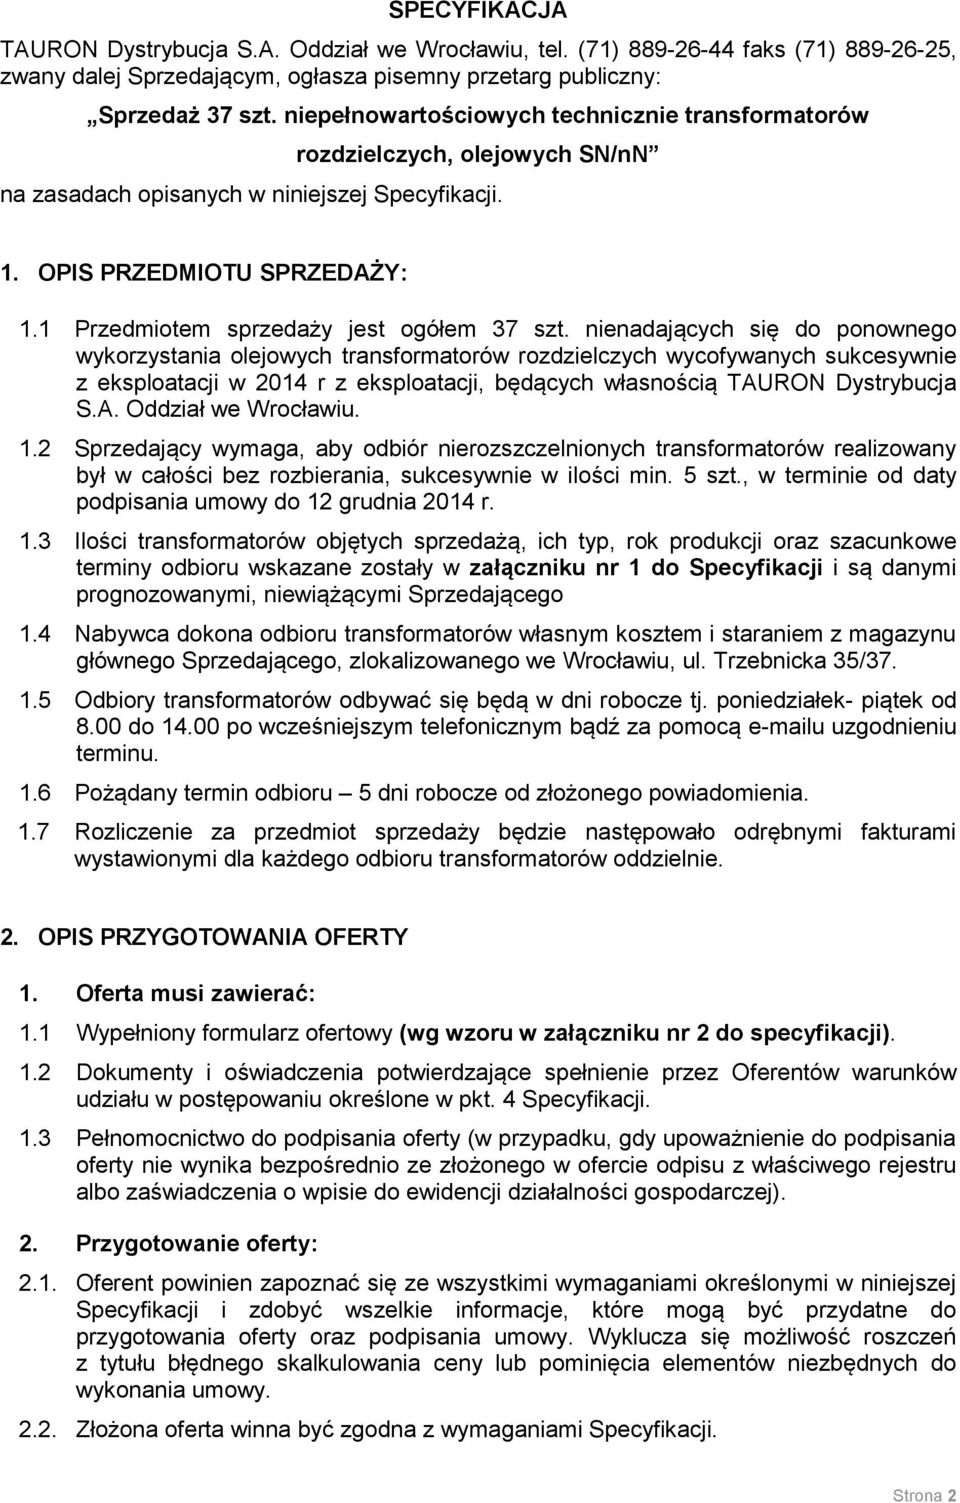 TAURON Dystrybucja S.A. Oddział we Wrocławiu. Specyfikacja Warunków  Sprzedaży (zwana dalej Specyfikacją) - PDF Darmowe pobieranie